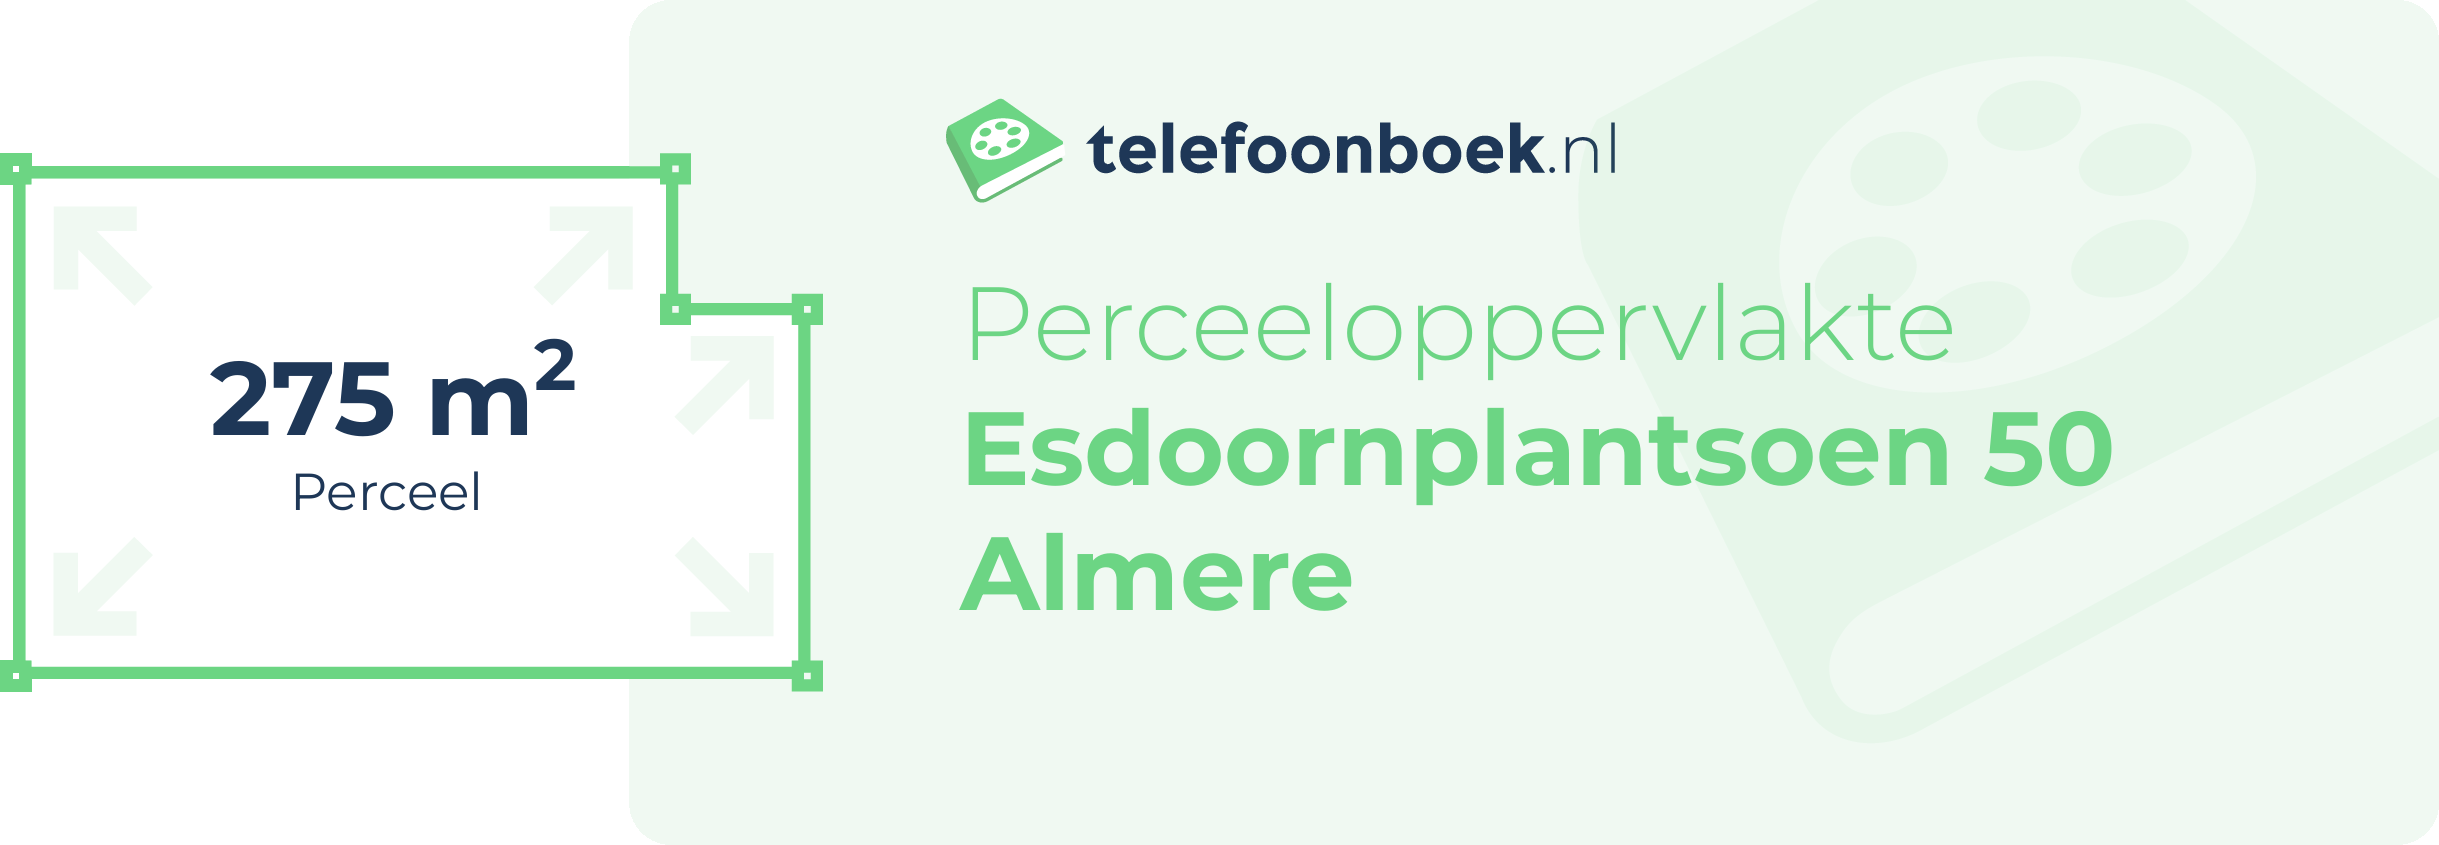 Perceeloppervlakte Esdoornplantsoen 50 Almere